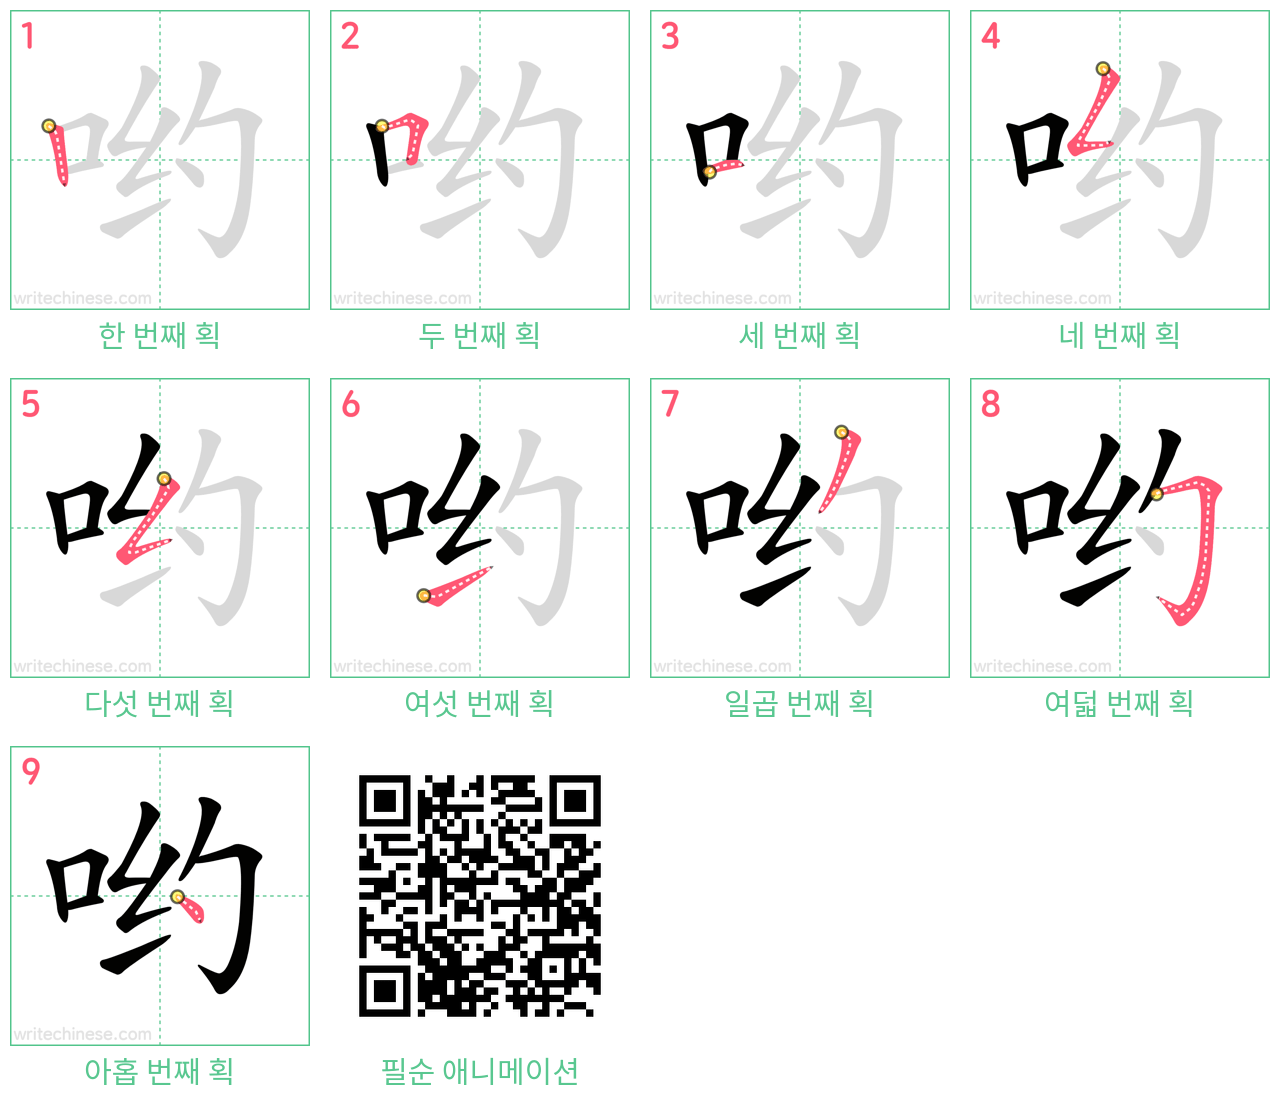 哟 step-by-step stroke order diagrams